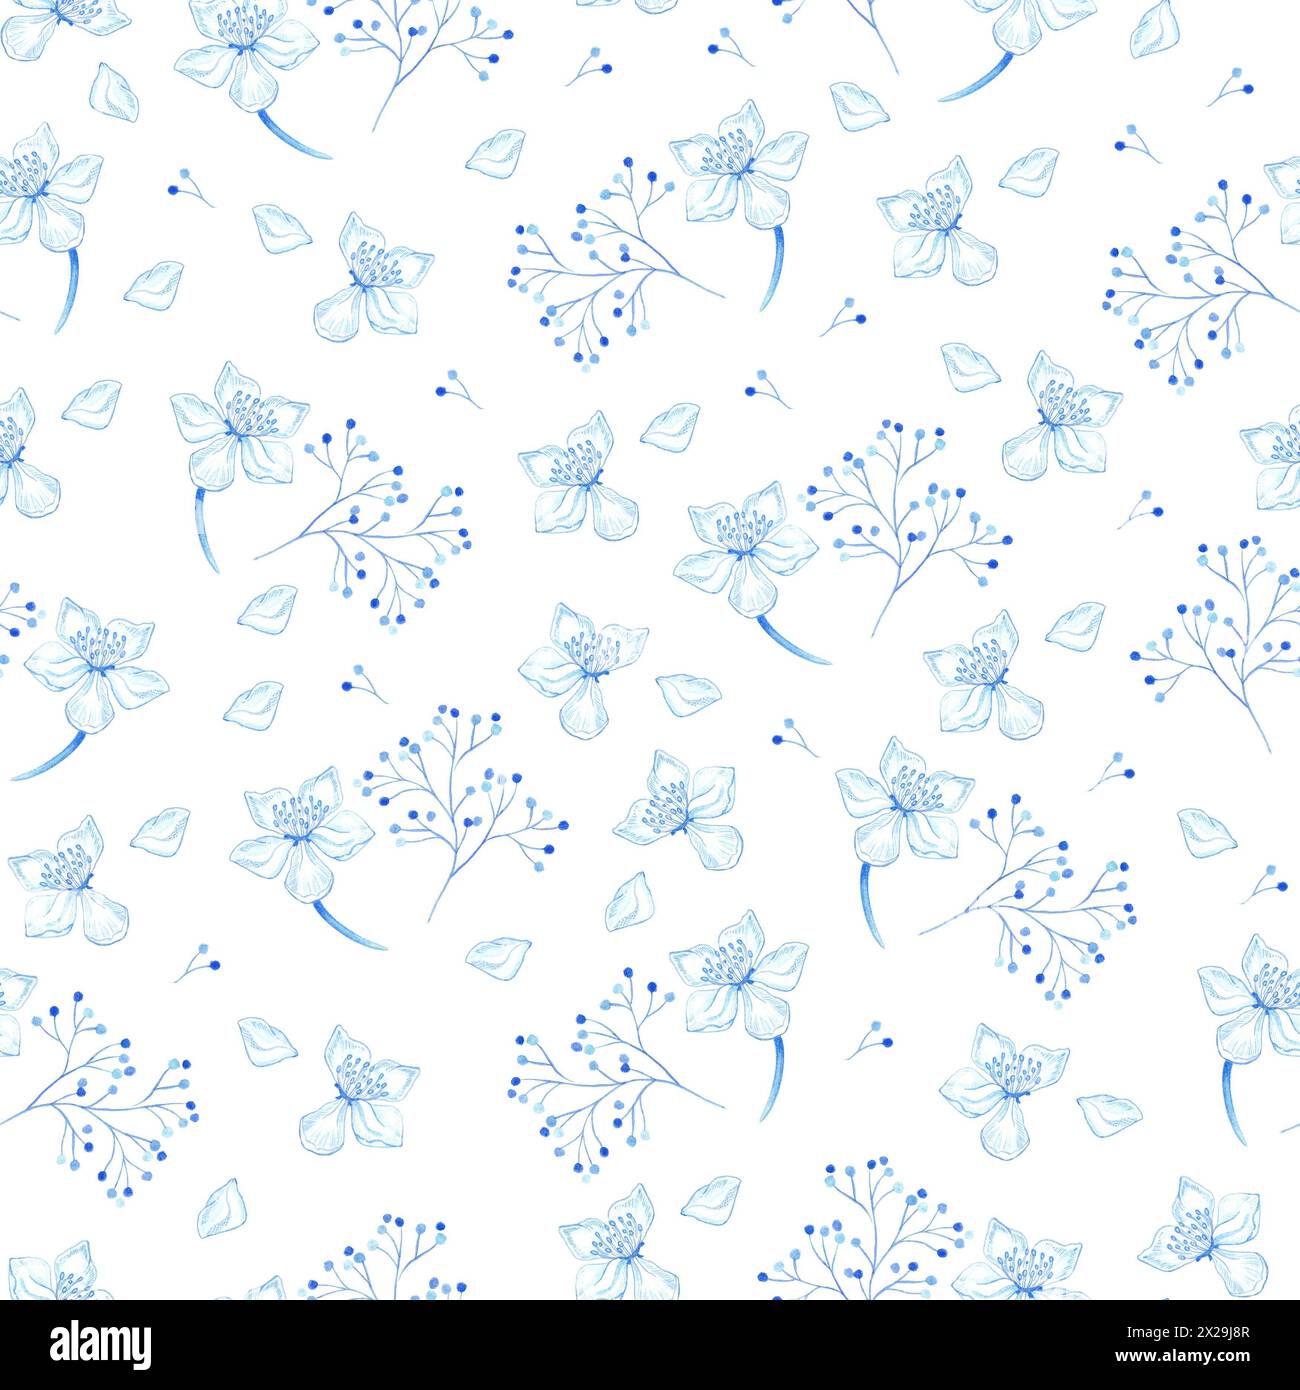 Illustrazione a motivi botanici senza cuciture con rami blu e azzurri, foglie e fiori di ciliegio su sfondo bianco. Tema primavera ed estate. Foto Stock